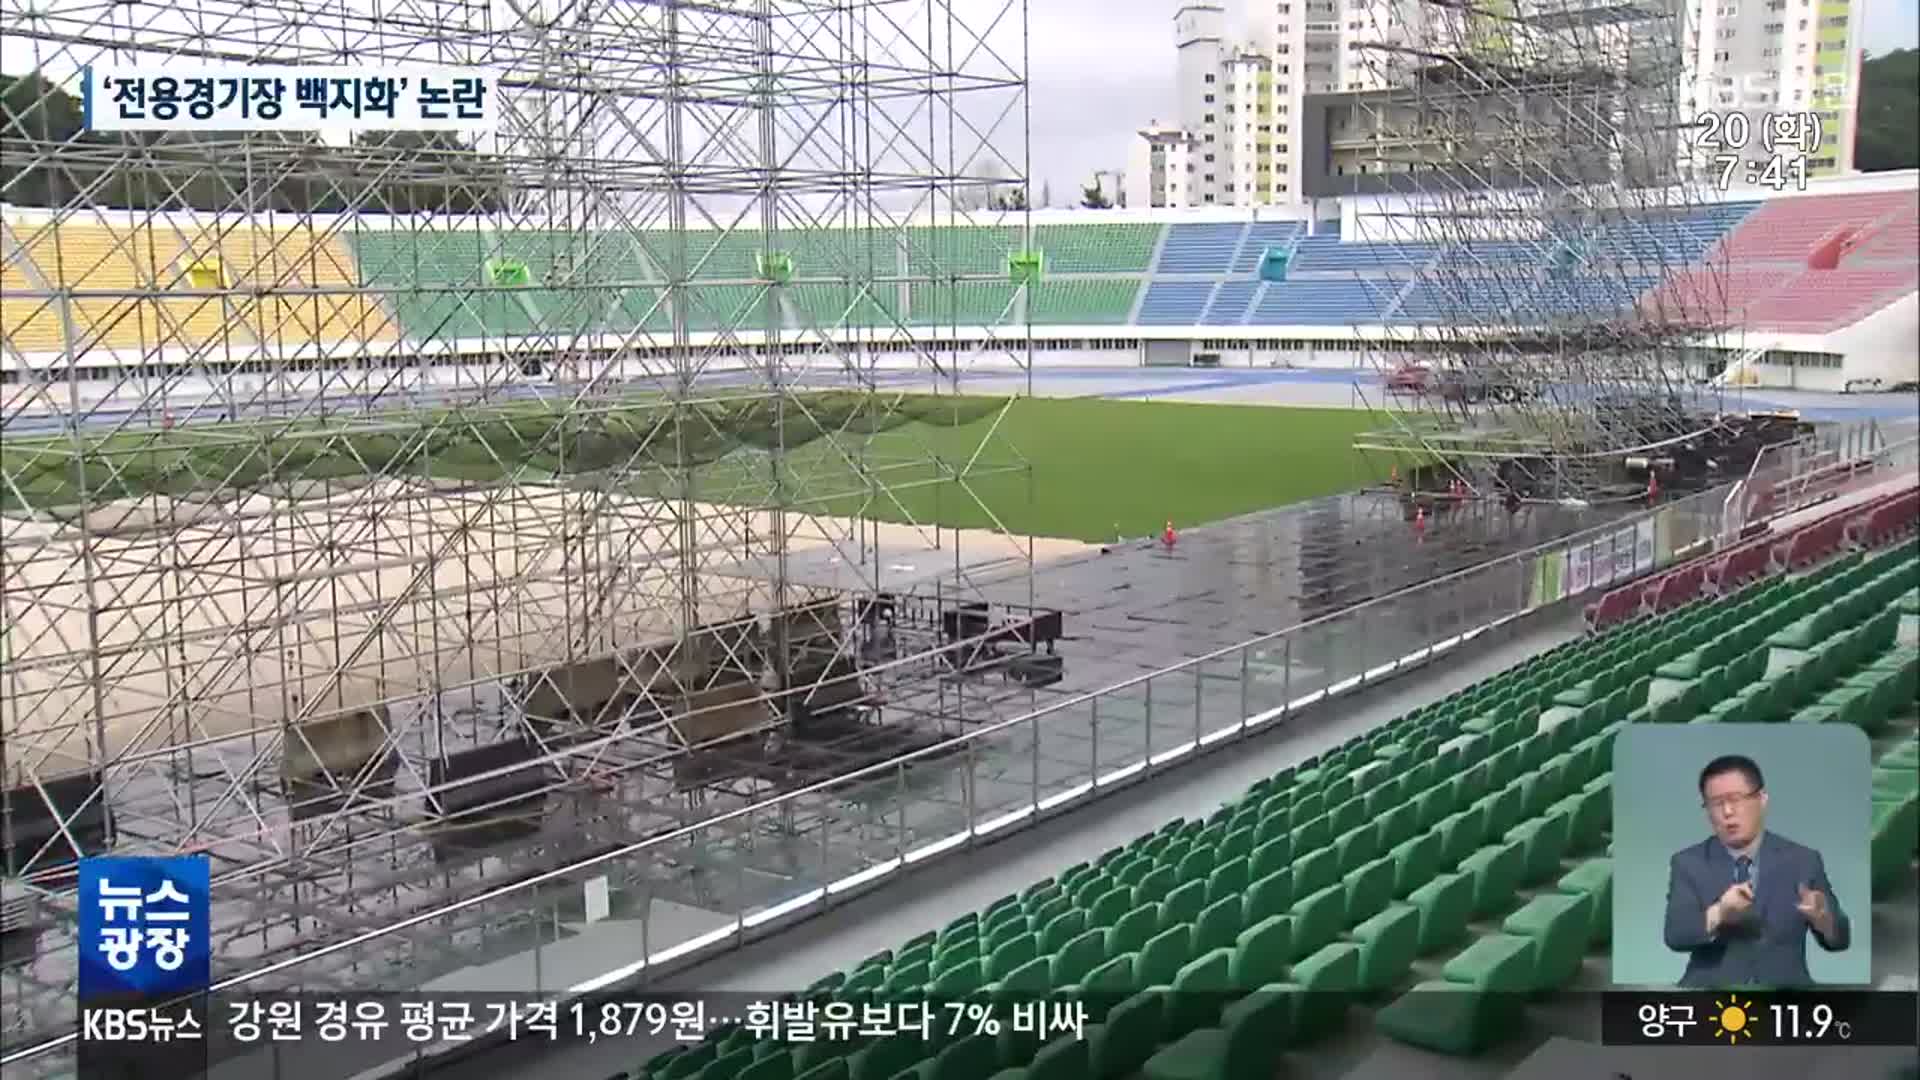 강원FC ‘전용경기장 건설’·‘순회 홈경기 철회’ 요구 가열